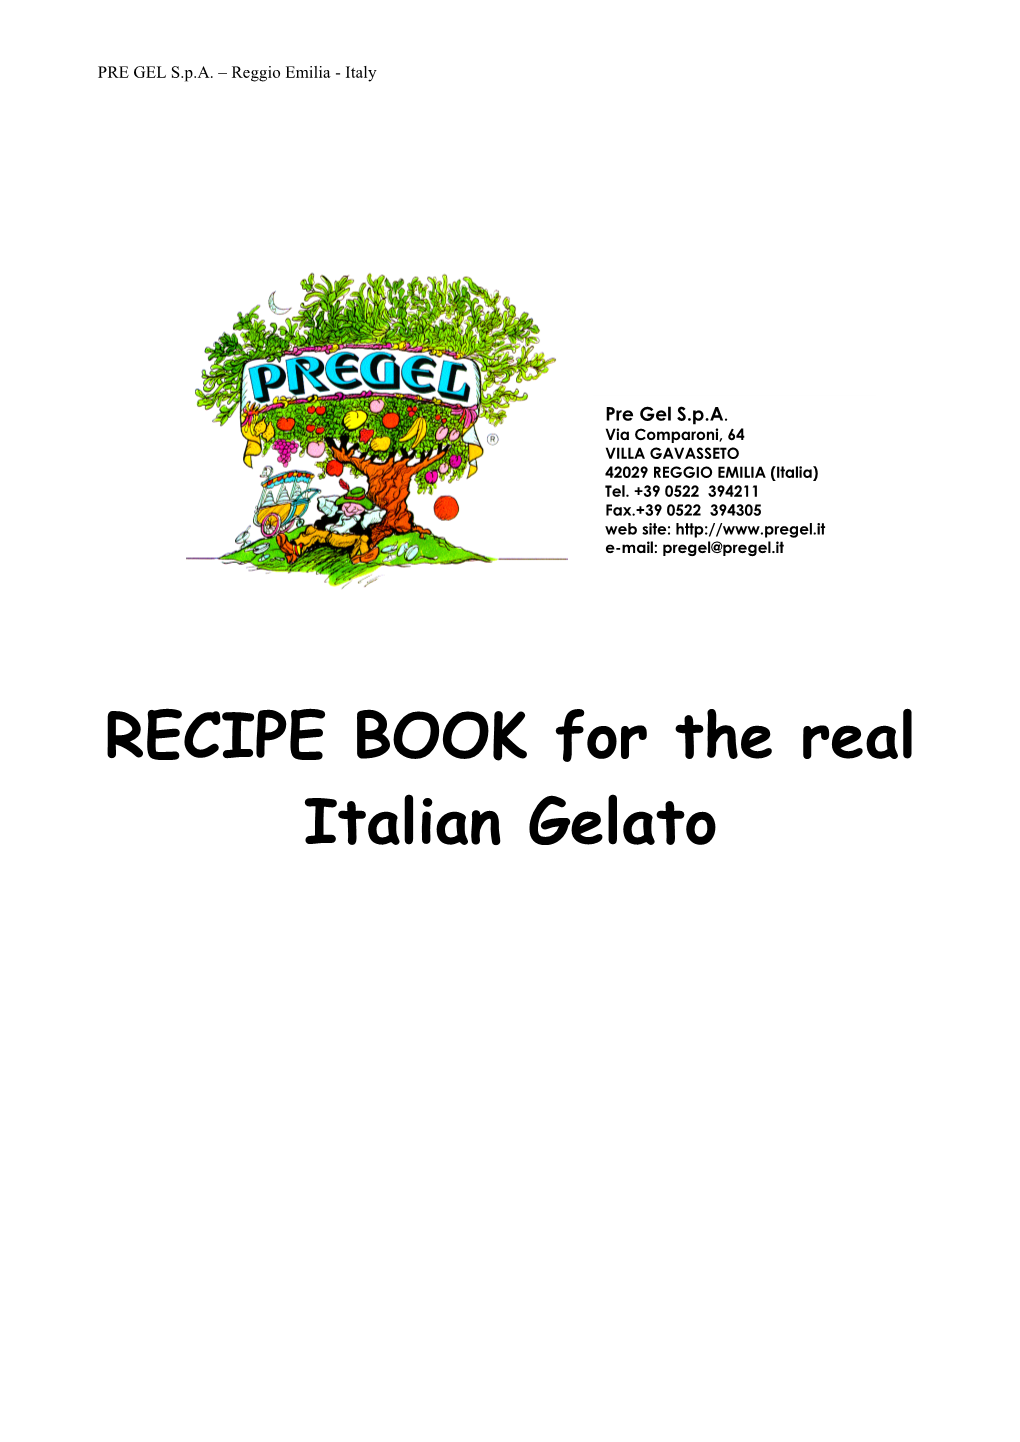 RECIPE BOOK for the Real Italian Gelato